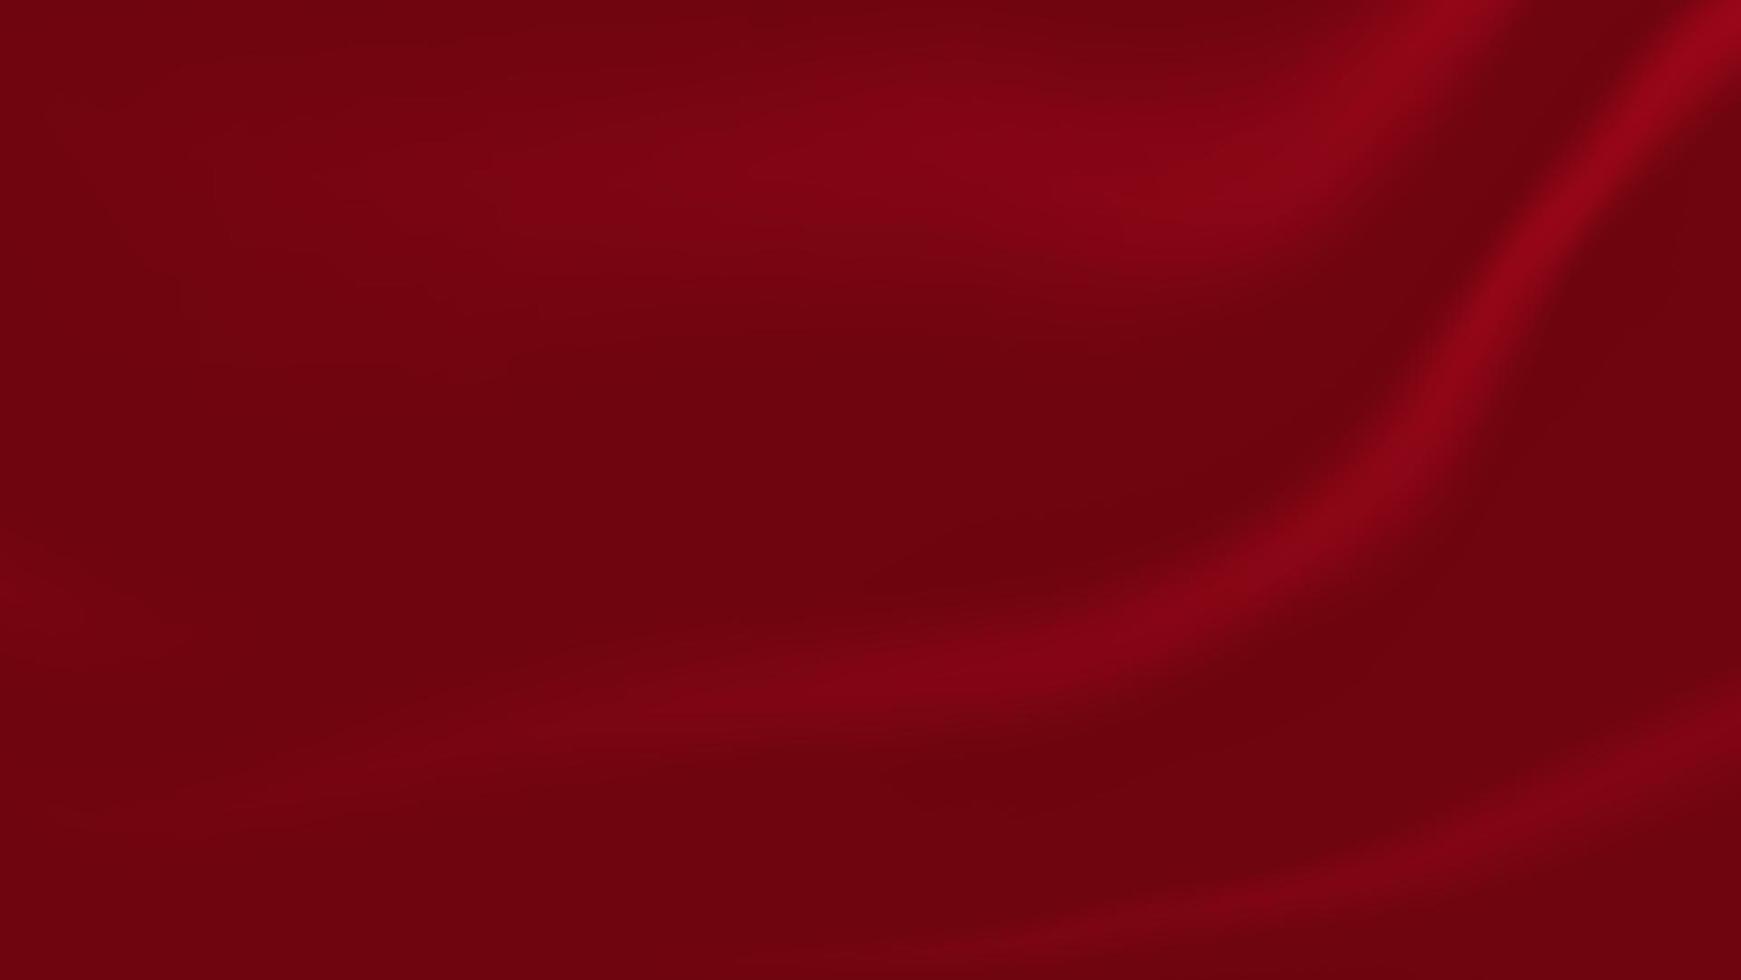 astratto vuoto rosso morbido e liscio sgualcita seta tessuto pieghevole struttura sfondo per decorativo grafico design vettore